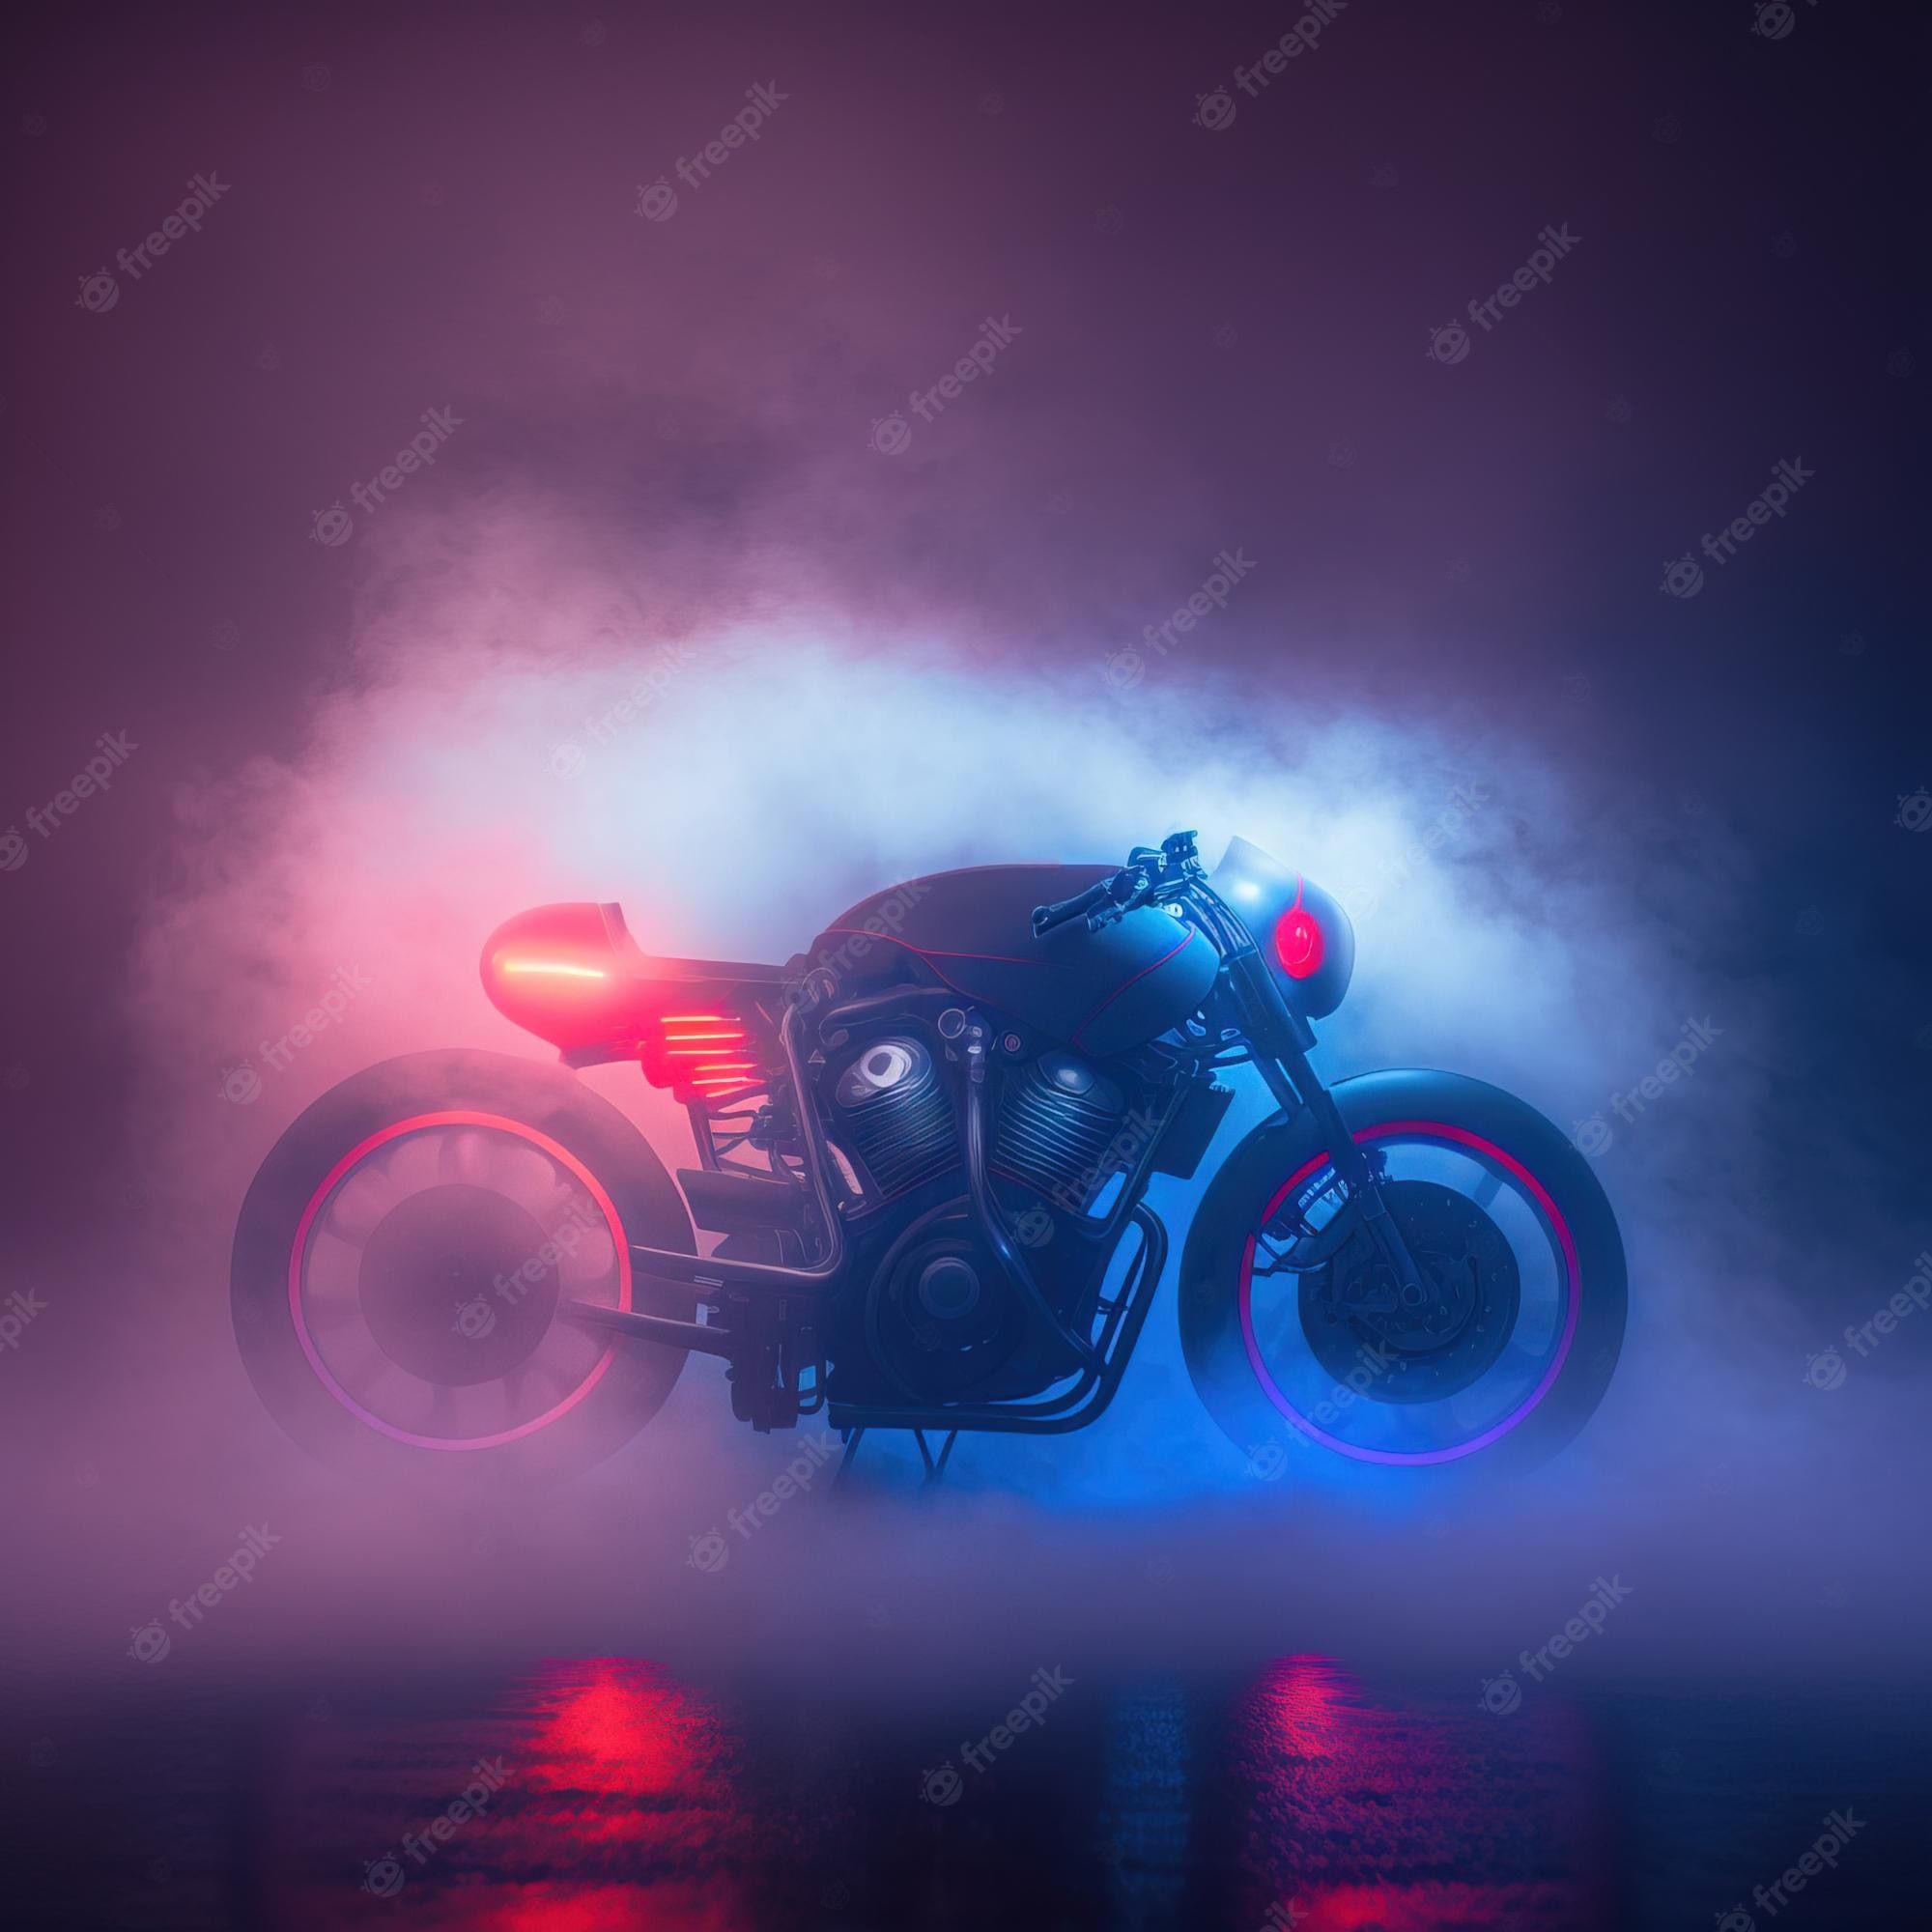  Motorrad Hintergrundbild 2000x2000. Motorrad In Einer Futuristischen Nachtstadt Mit Neonlicht Und Nebel 3D Rendering